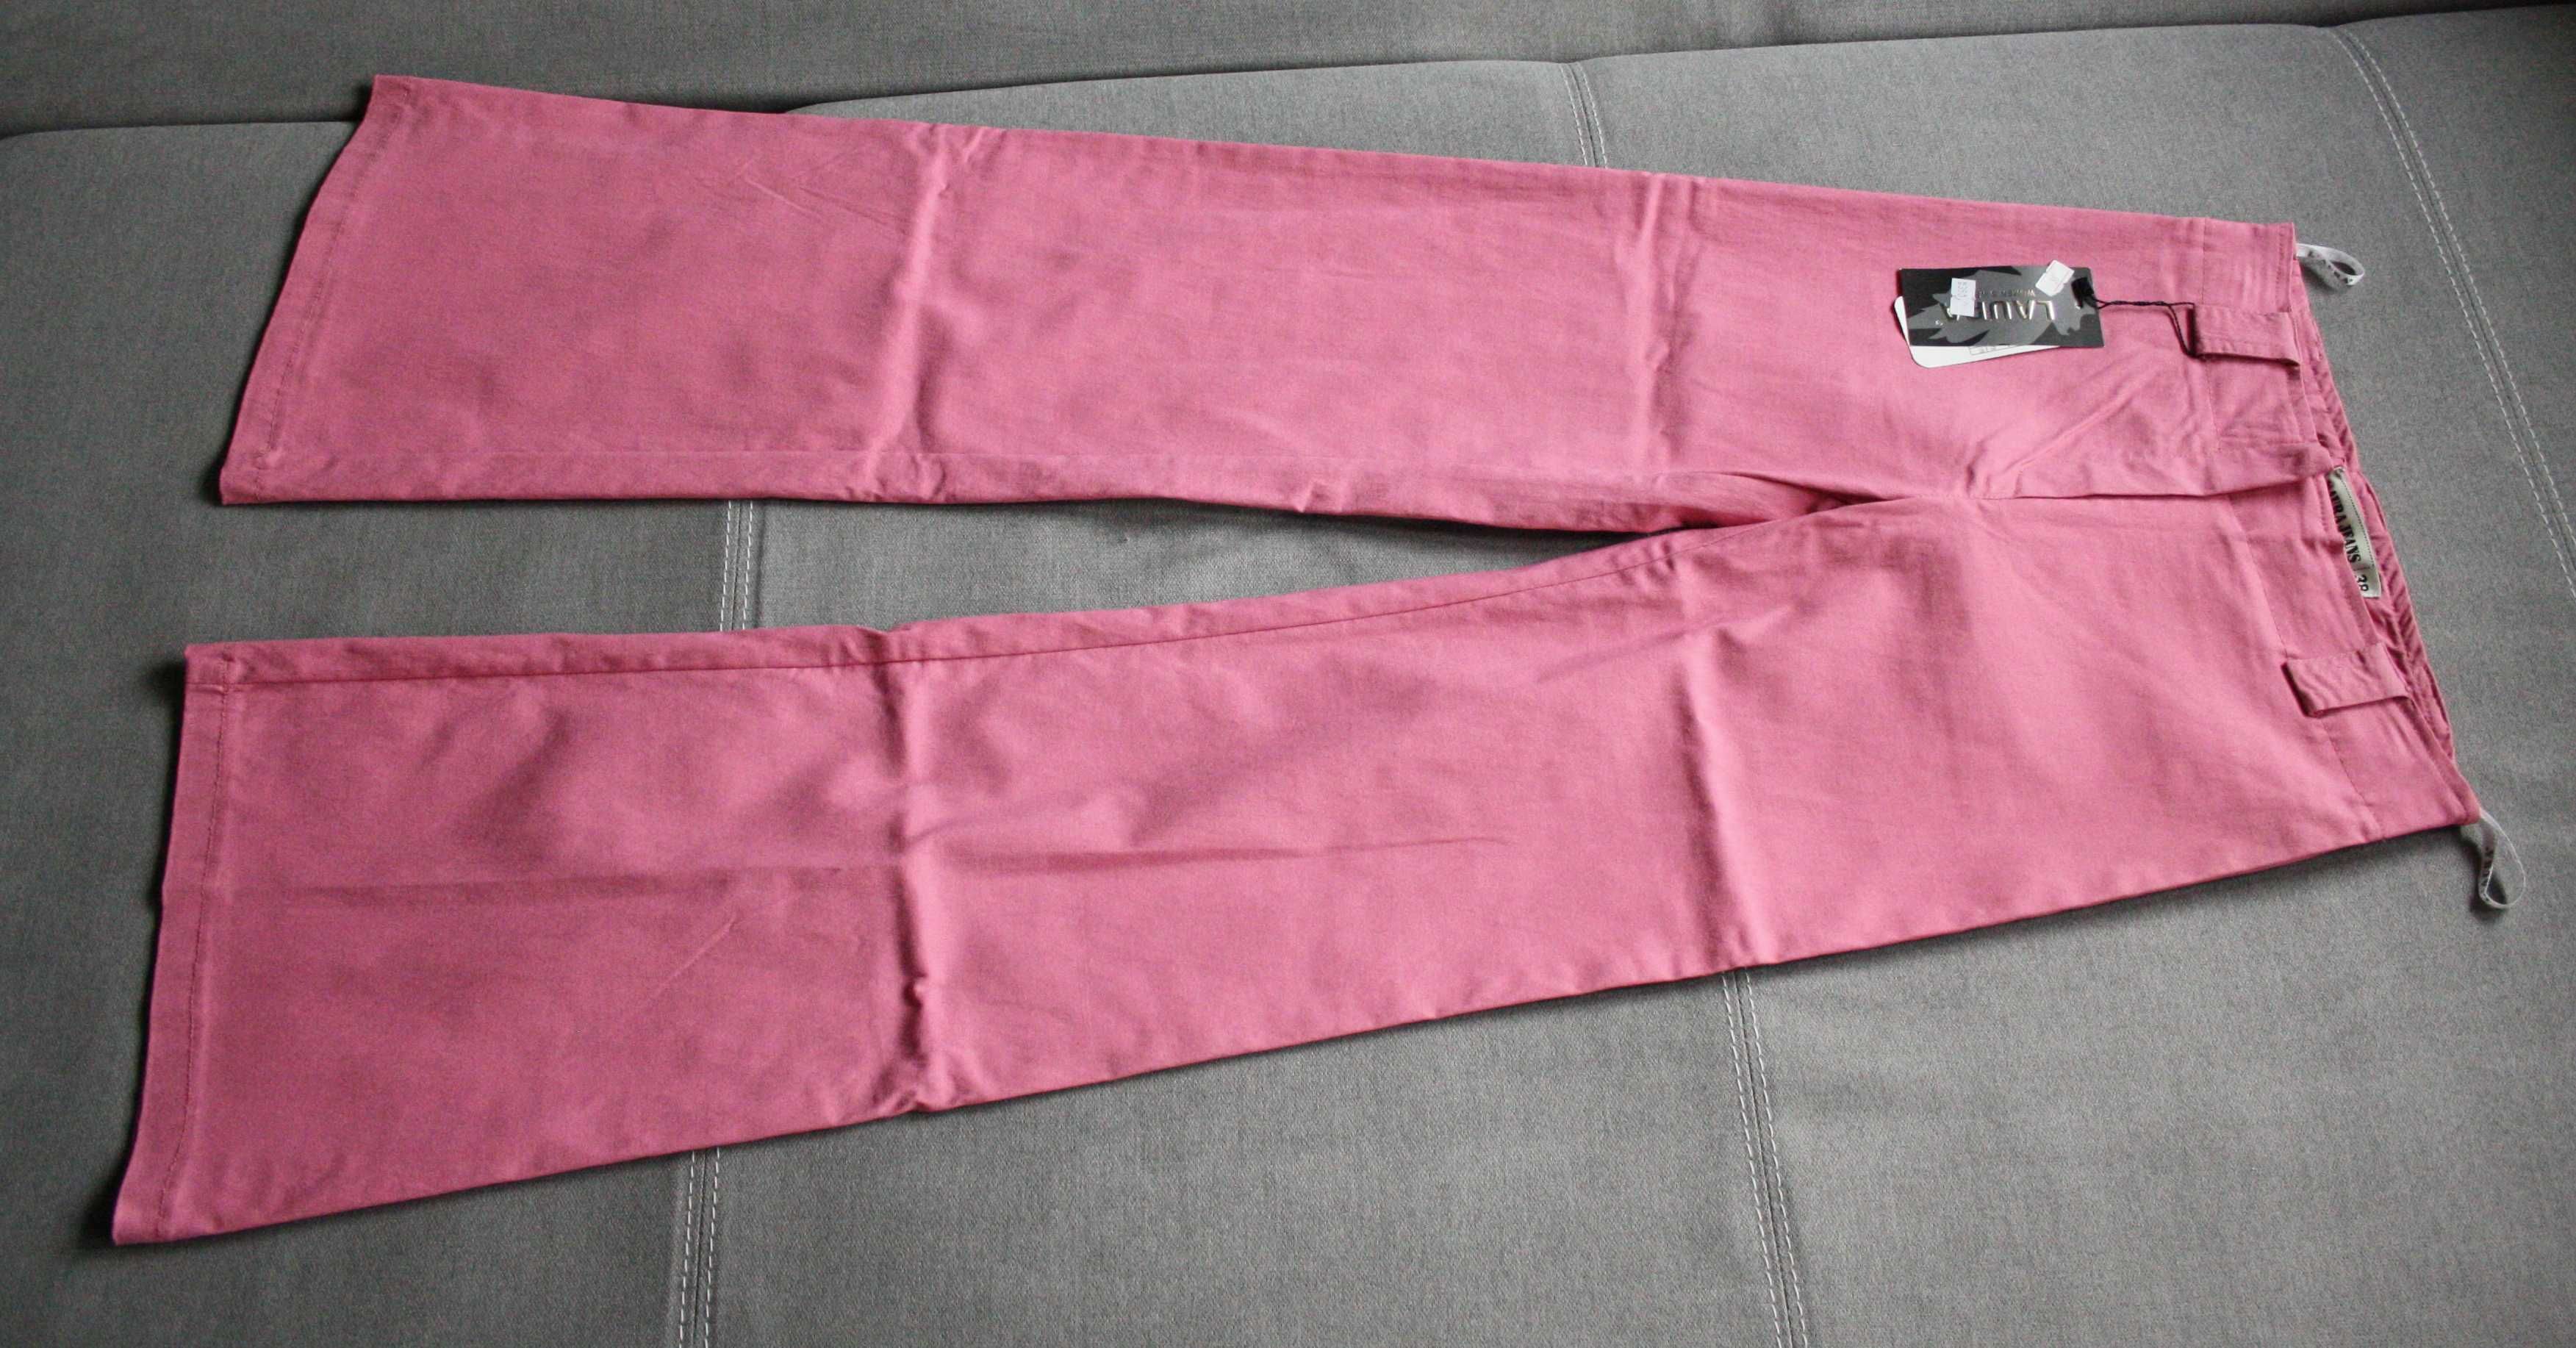 6 par spodni damskich - intensywne kolory - roz. S - nowe